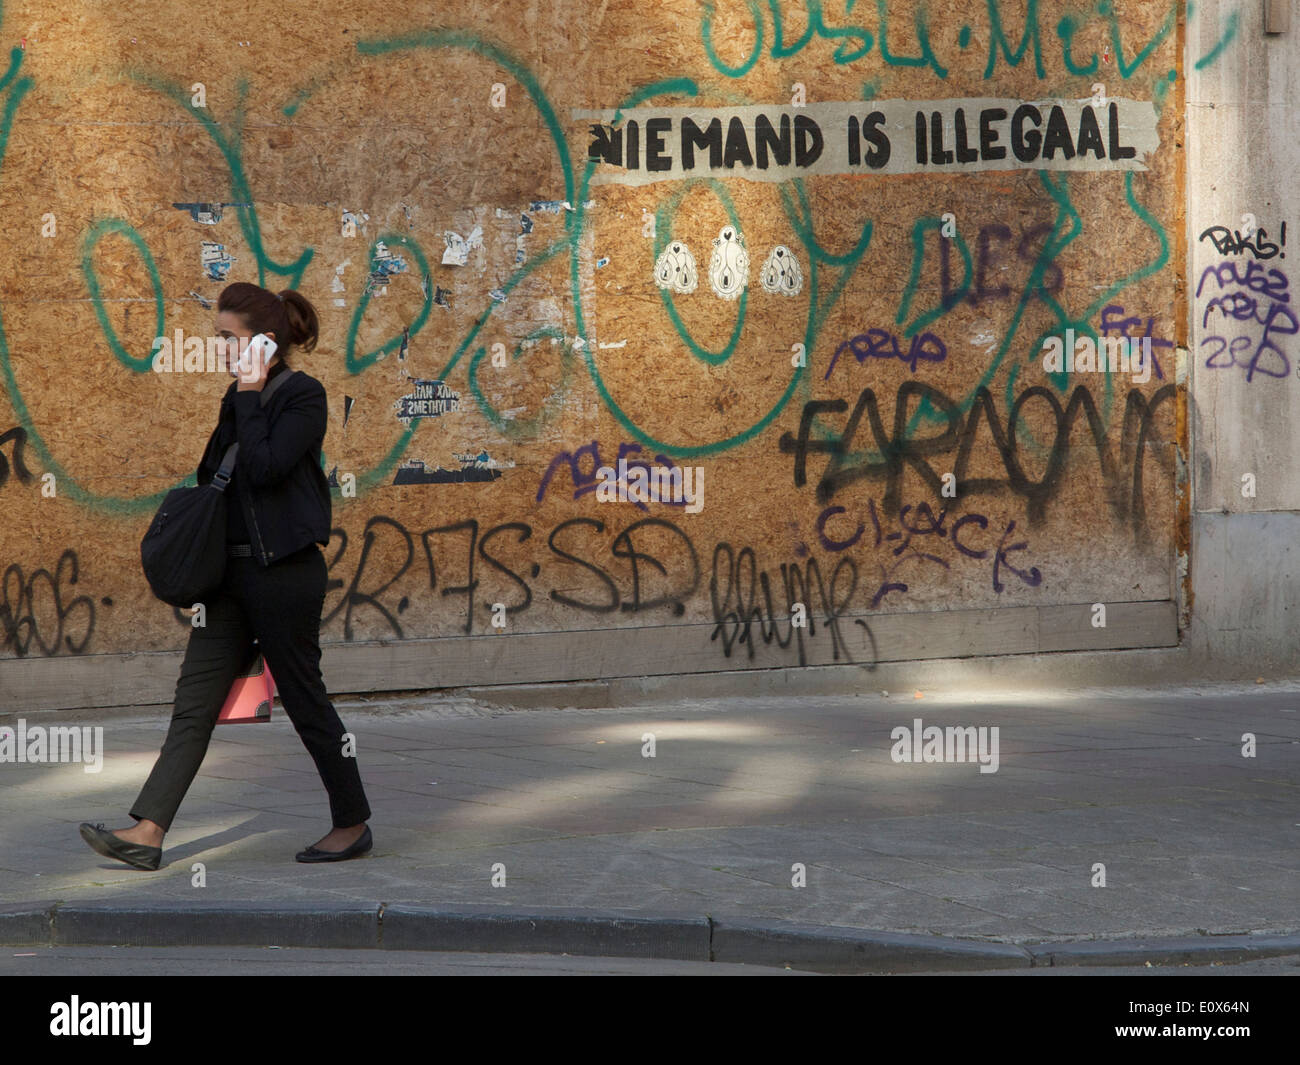 Frau am Handy mit Graffiti sagen: niemand ist illegal in niederländischer Sprache, Brüssel, Belgien Stockfoto